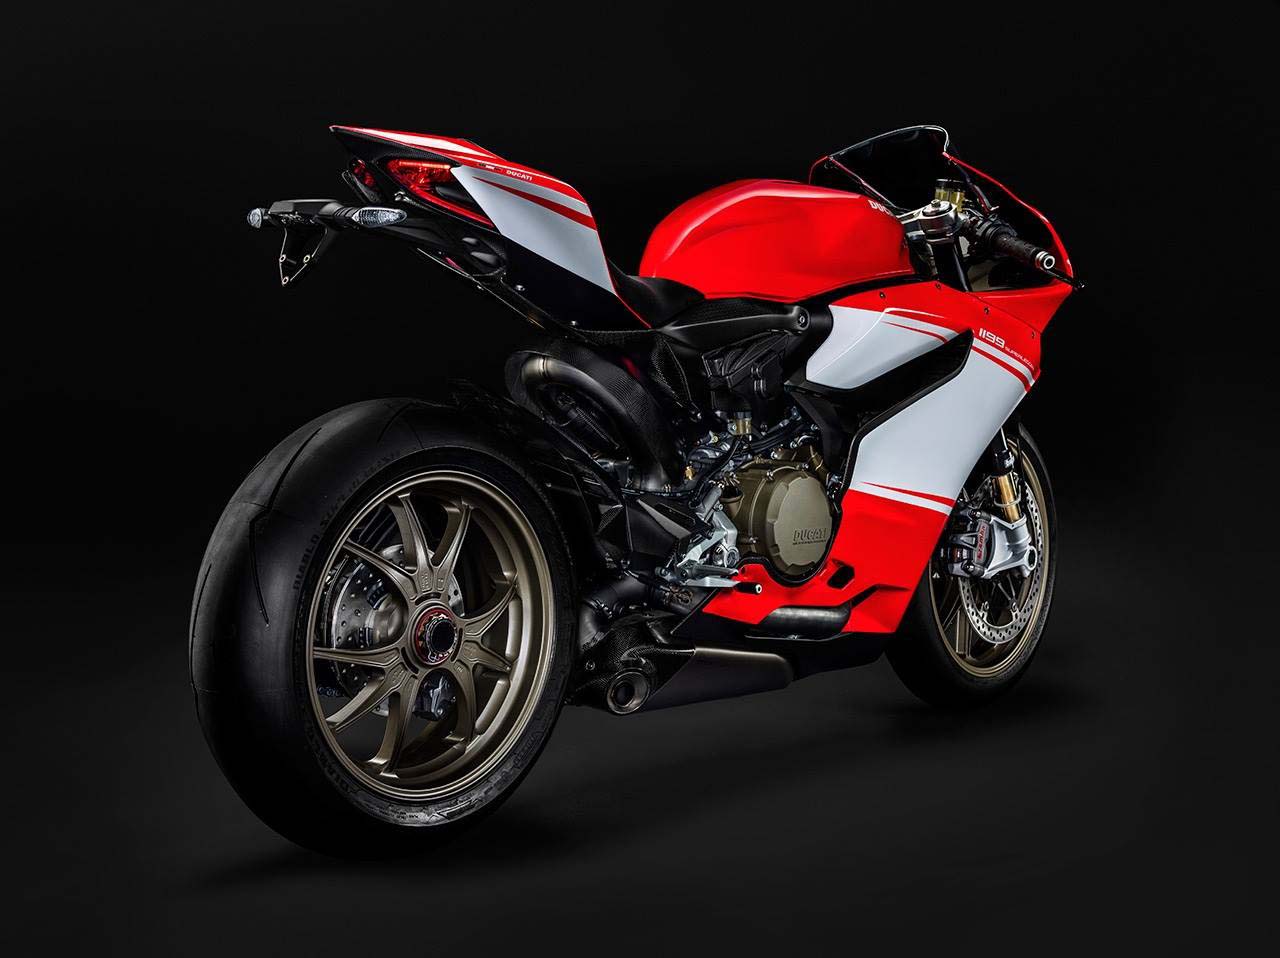 Ducati Panigale Superleggera pictures leaked